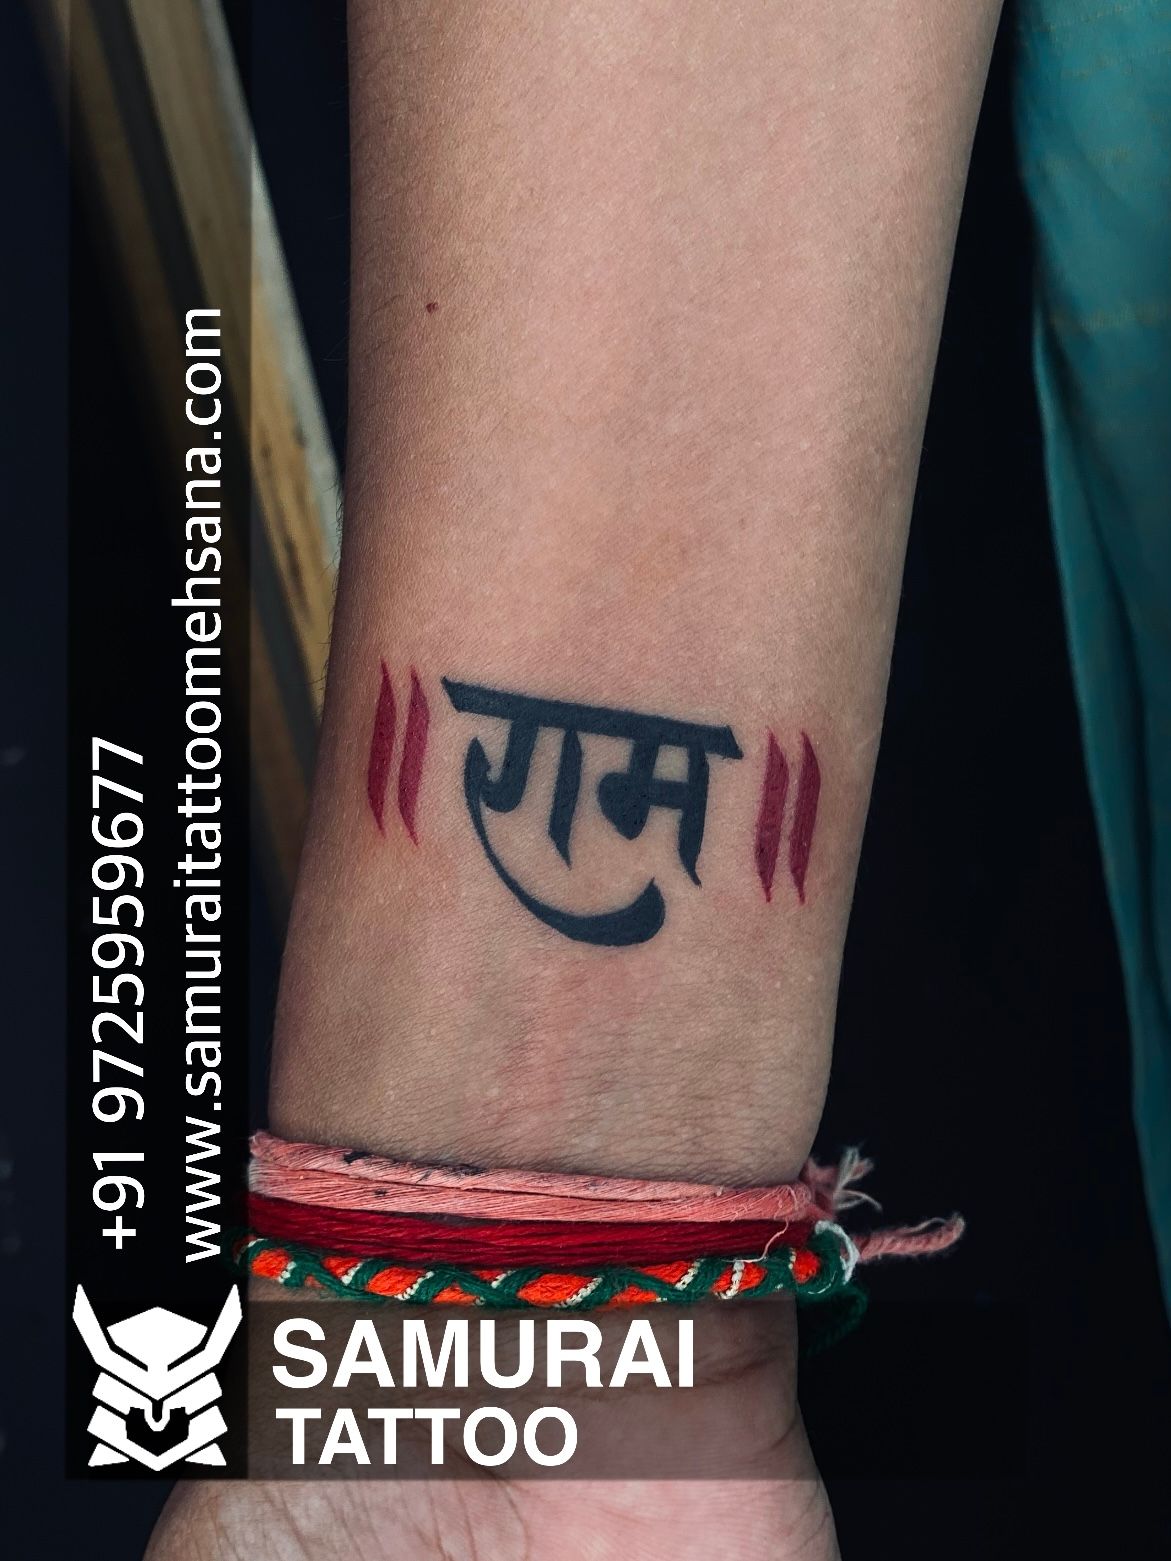 Jai shree ram 🚩 ram navami drowning temporary diy tattoo designs with home  - YouTube